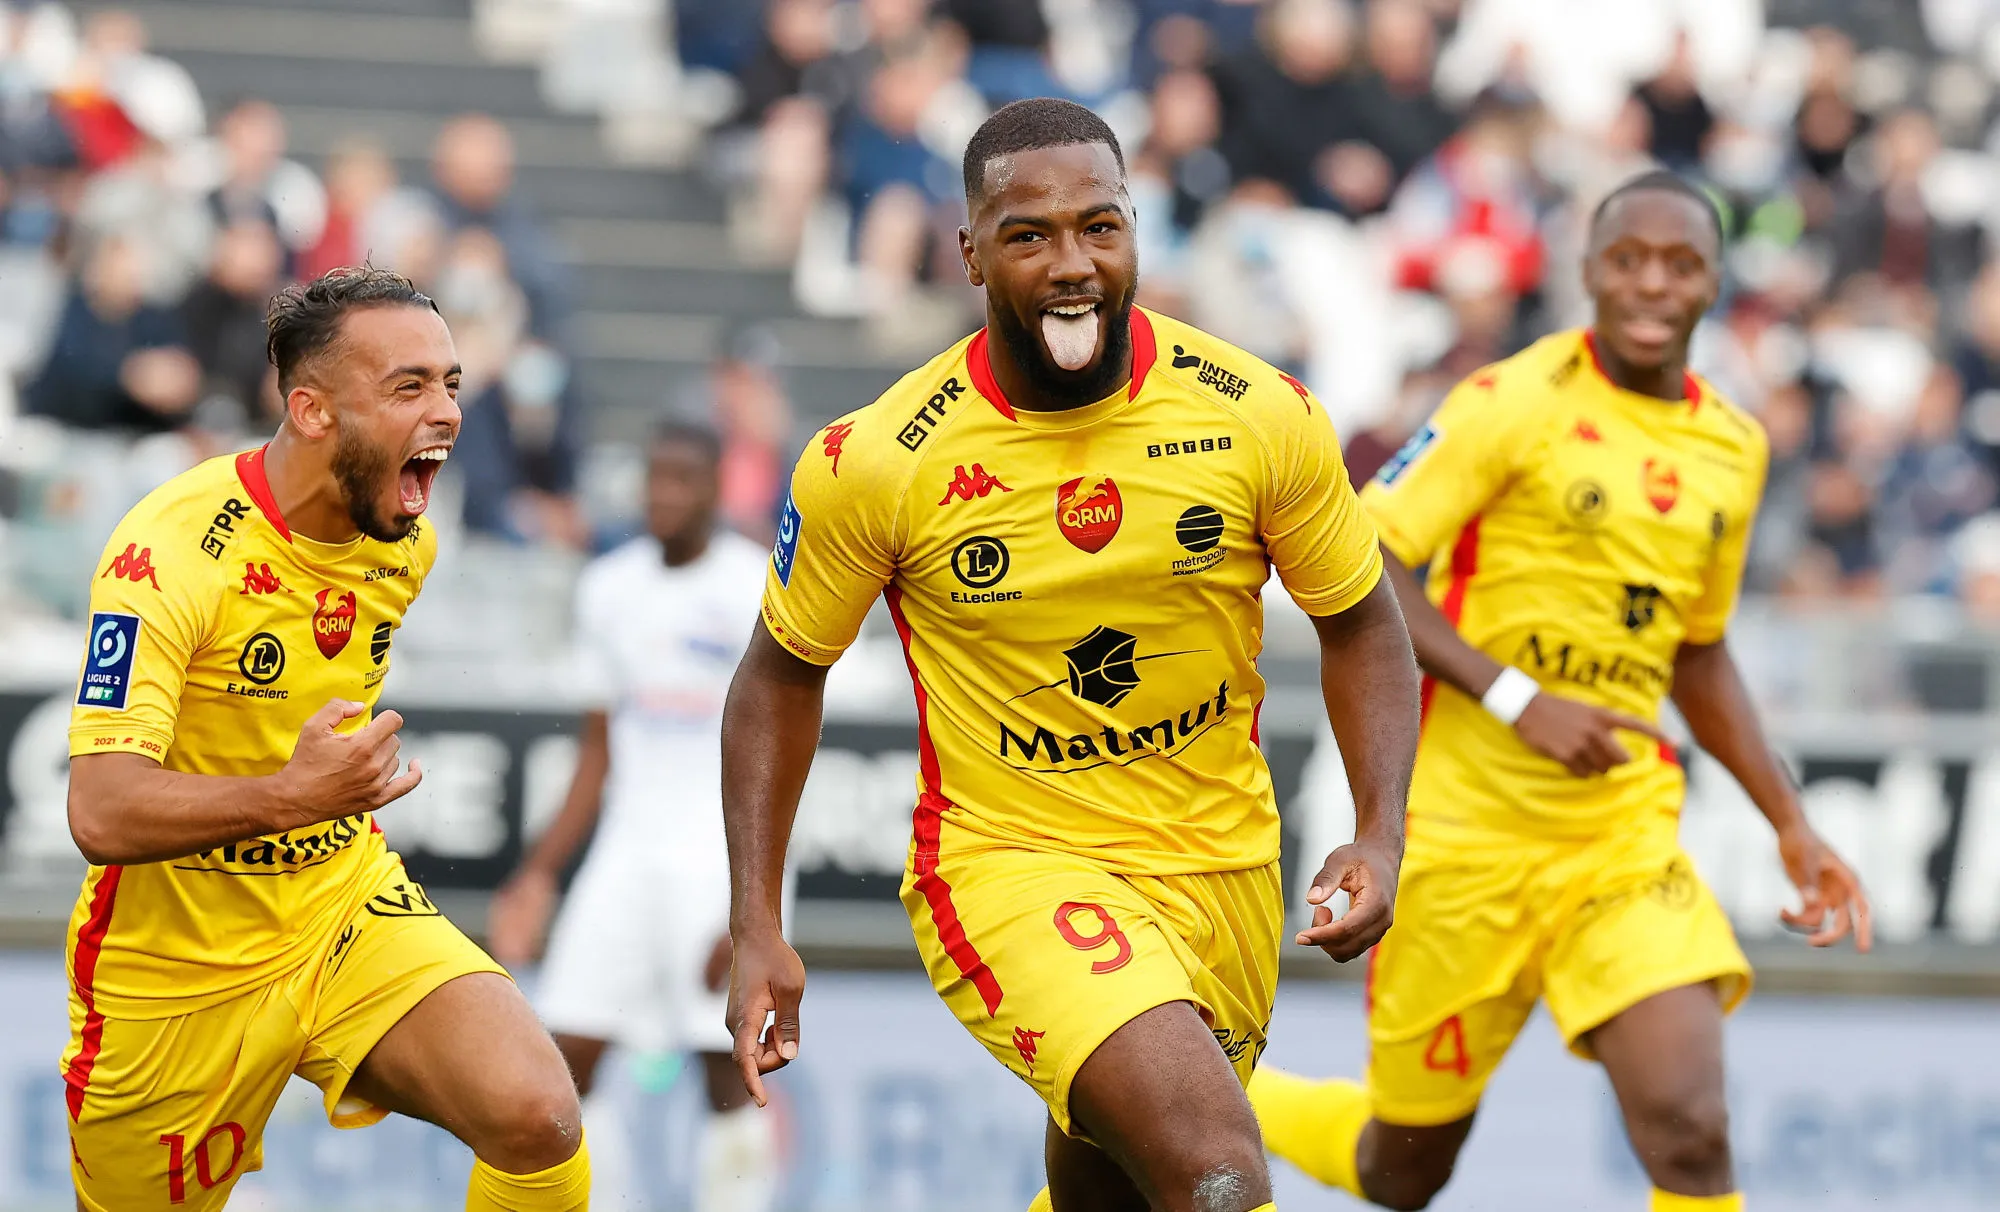 Pronostic Quevilly Rouen Nîmes : Analyse, cotes et prono du match de Ligue 2